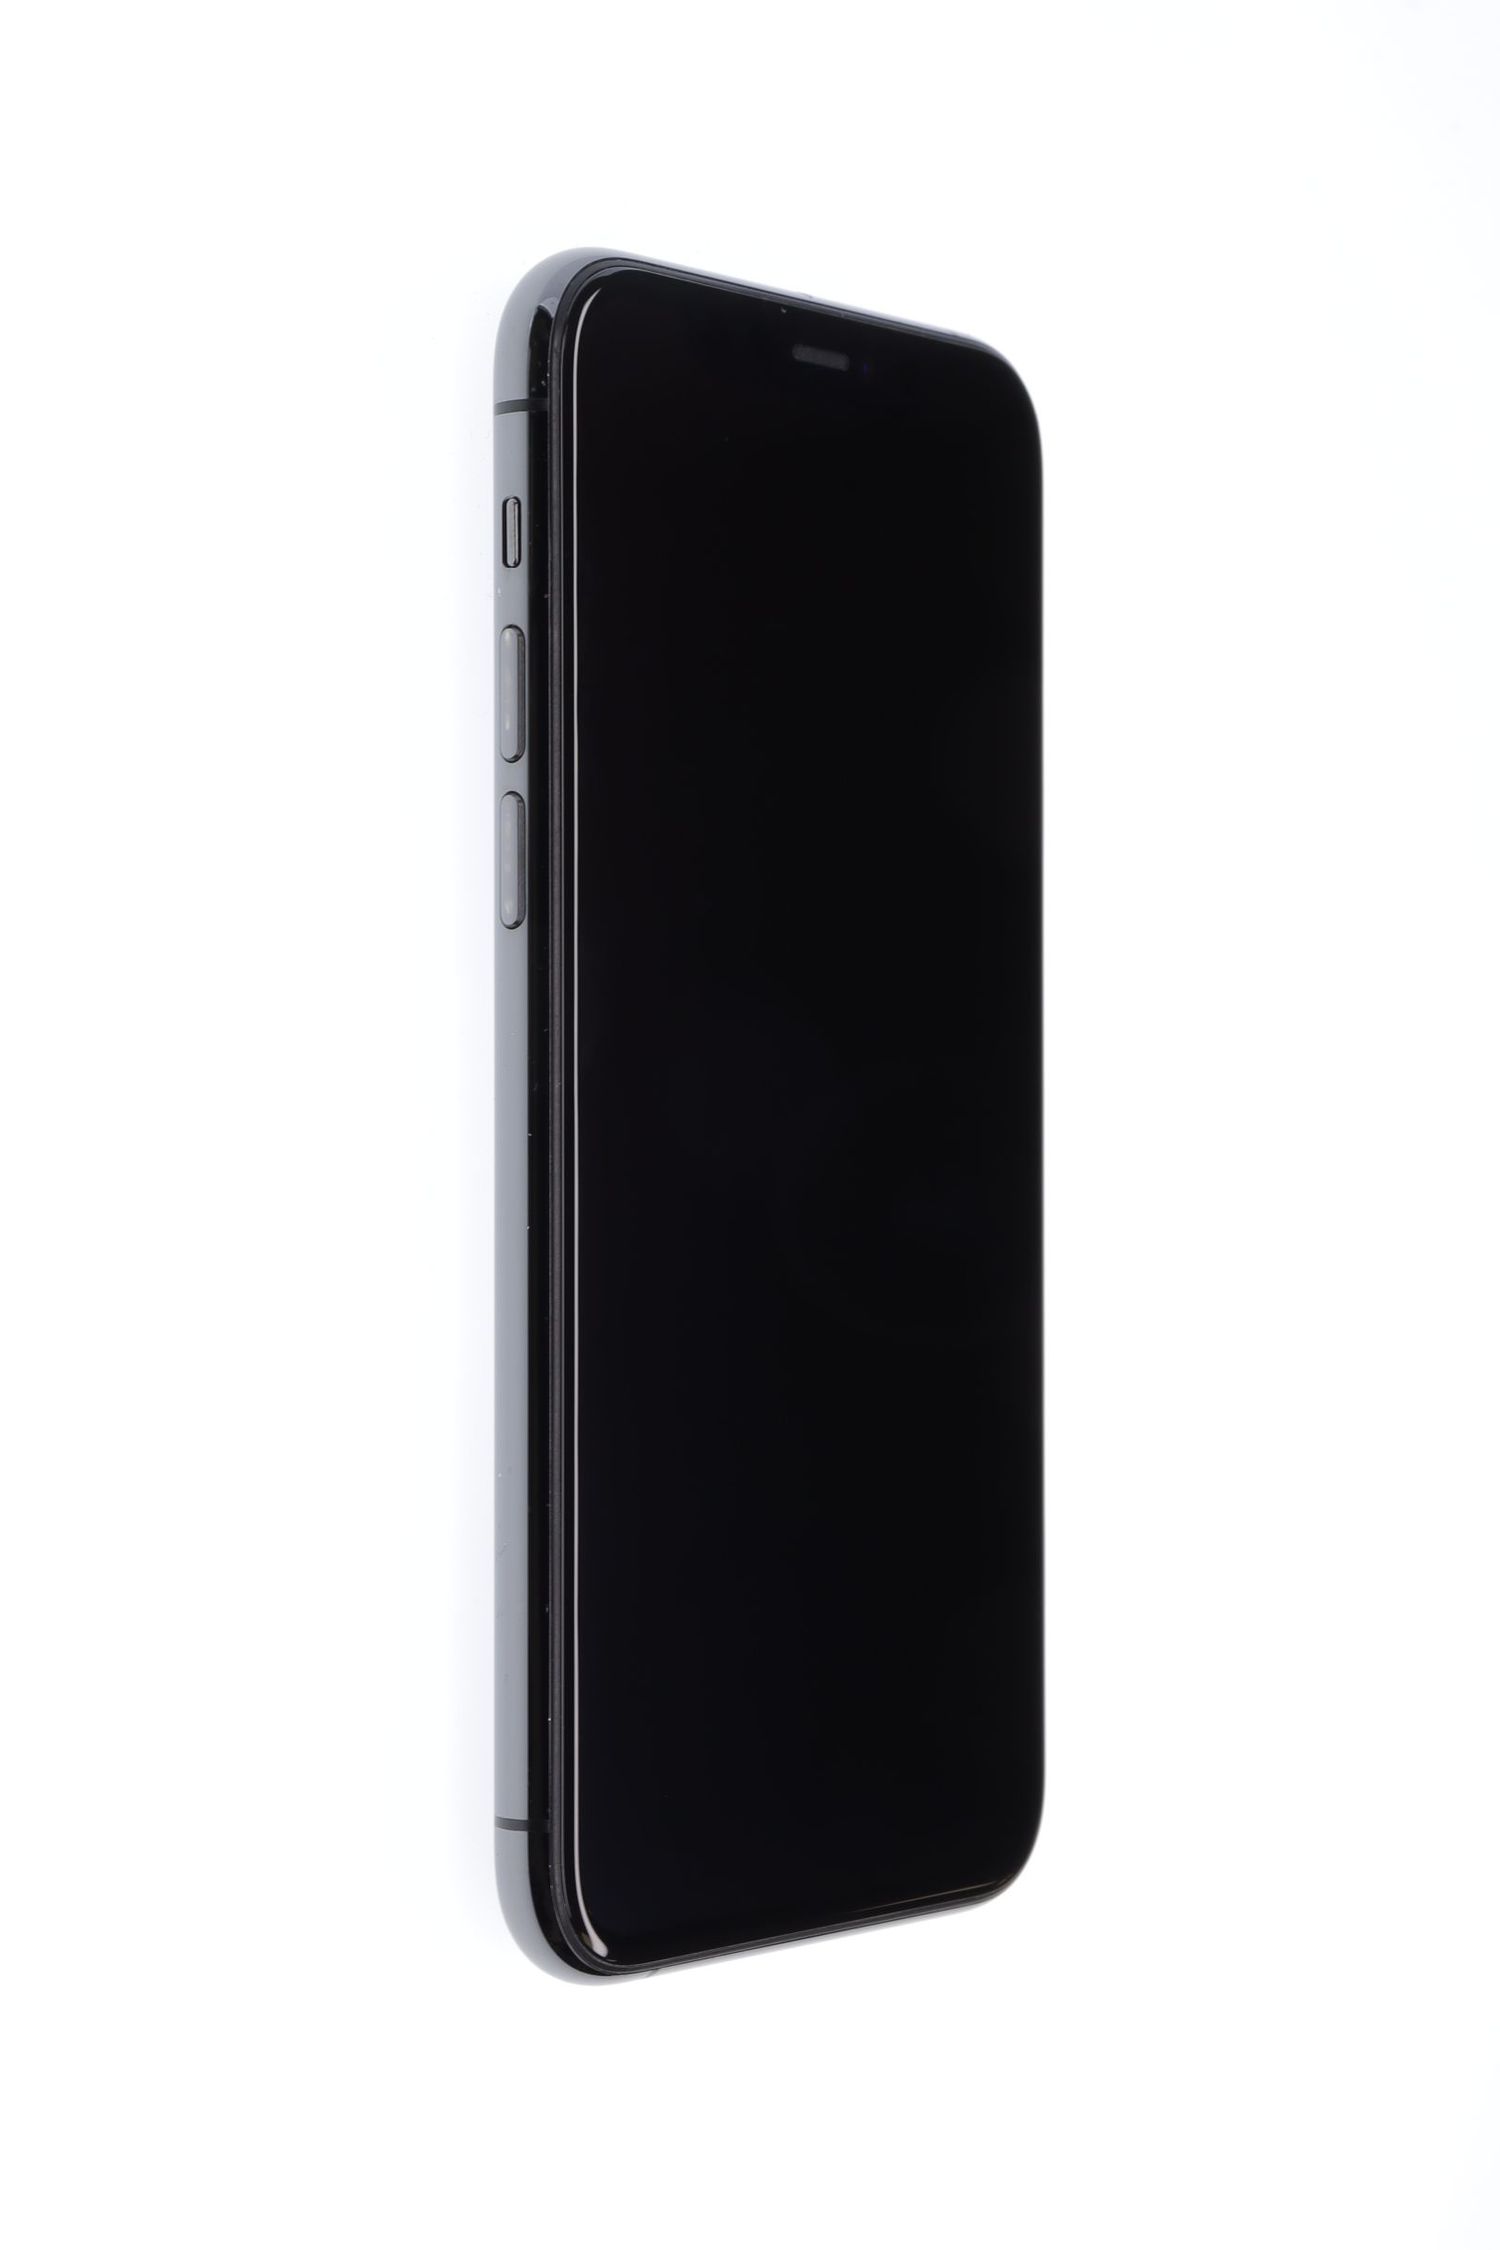 Κινητό τηλέφωνο Apple iPhone 11 Pro, Space Gray, 256 GB, Excelent